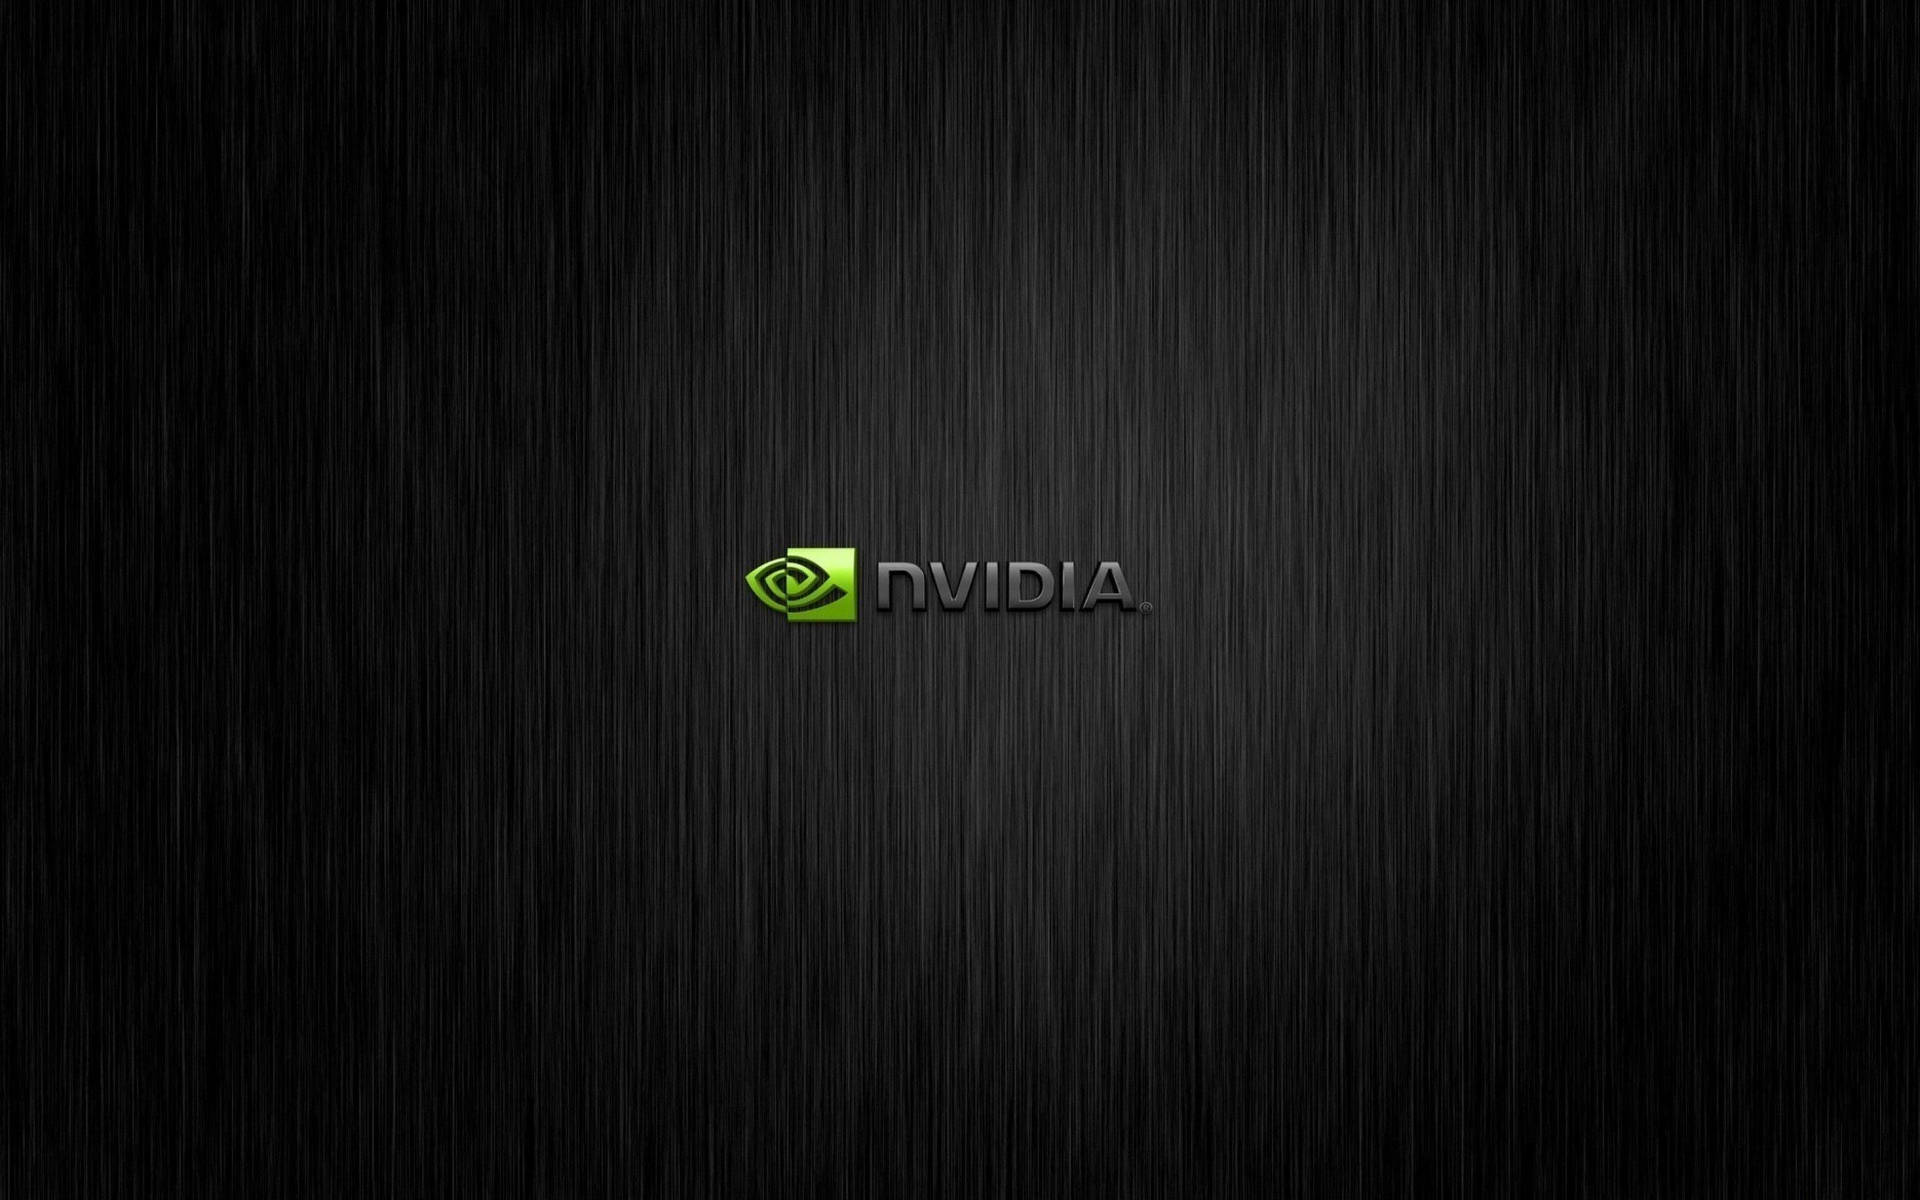 Classic Black Nvidia HD Wallpaper